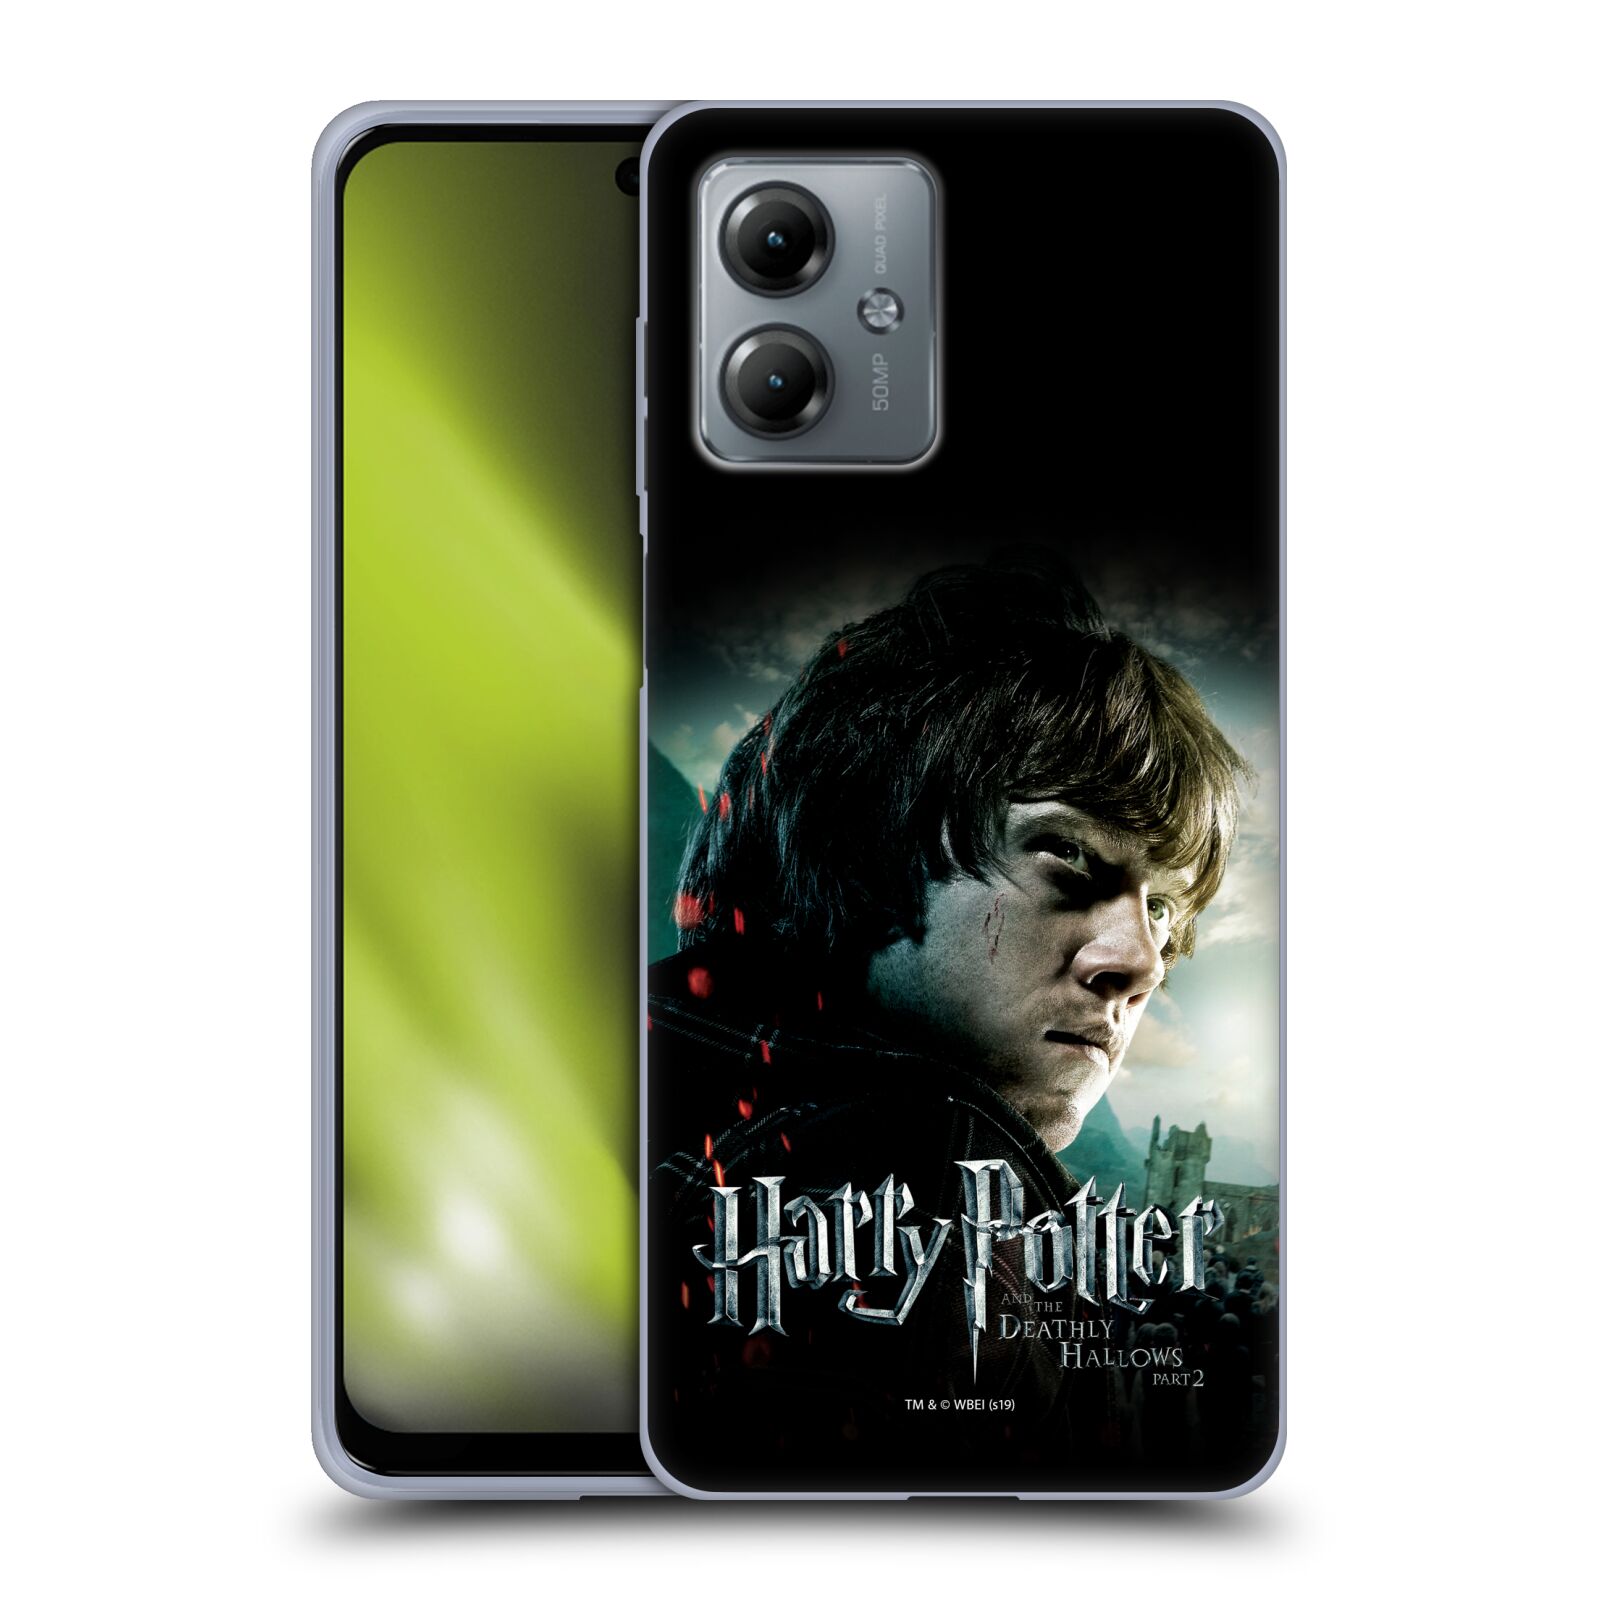 Silikonové pouzdro na mobil Motorola Moto G14 - Harry Potter a Relikvie smrti - Ron Weasley (Silikonový kryt, obal, pouzdro na mobilní telefon Motorola Moto G14 s licencovaným motivem Harry Potter a Relikvie smrti - Ron Weasley)